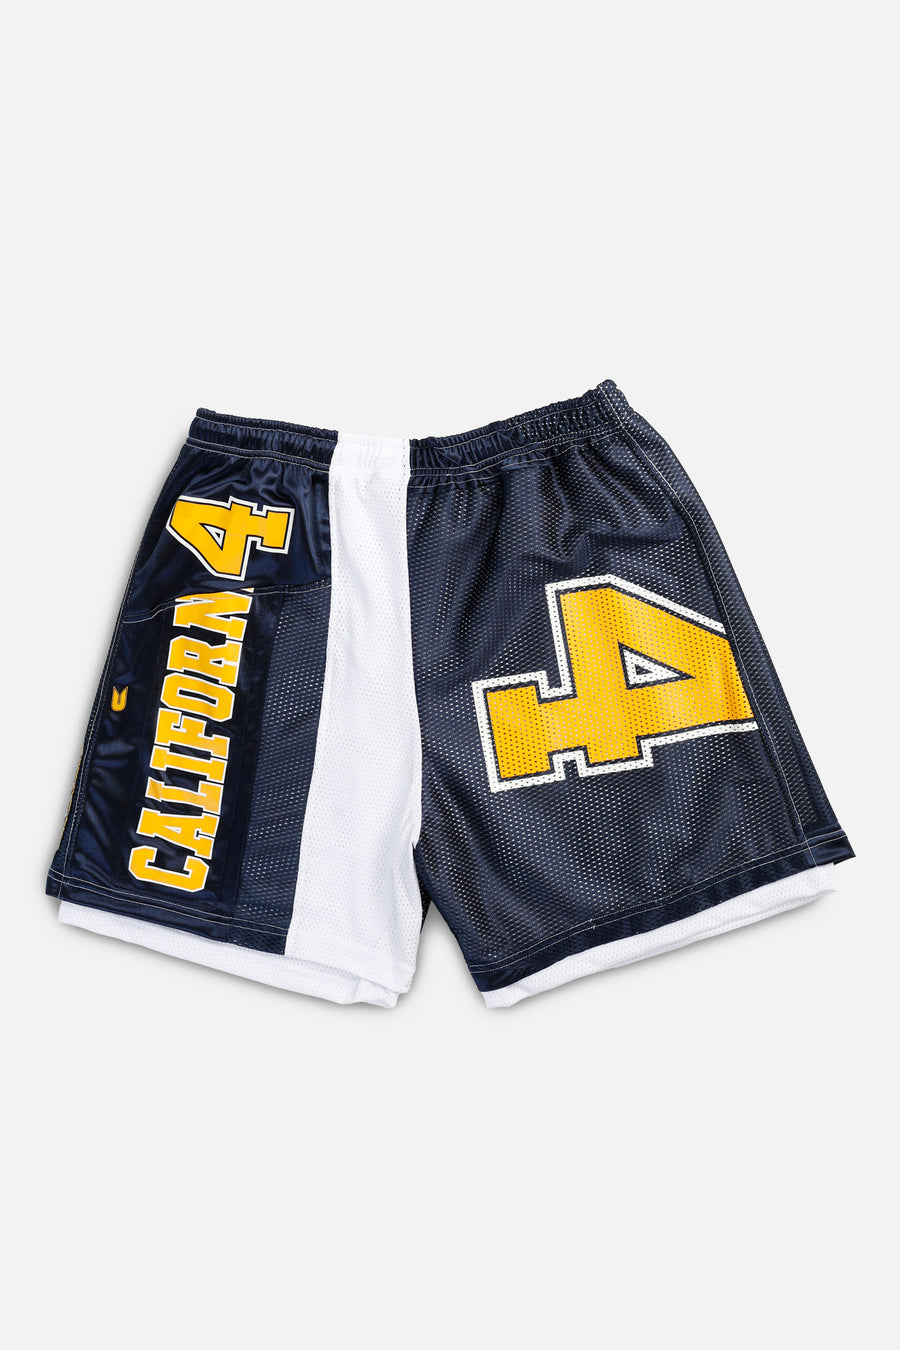 Unisex Rework California Golden Bears Jersey Shorts - XXL